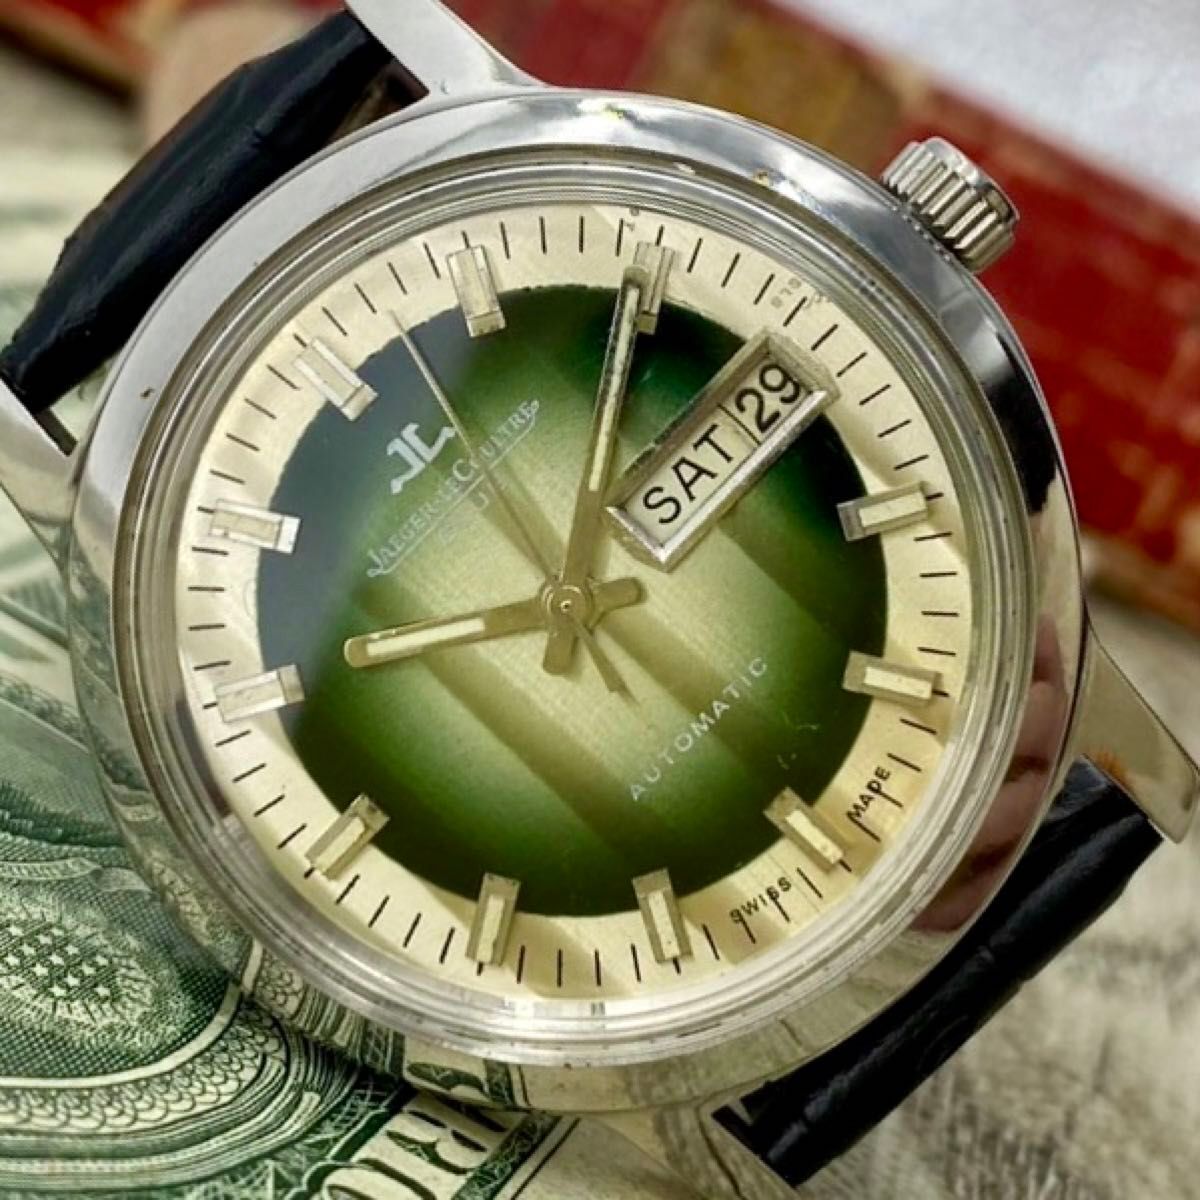 【動作良好】★送料無料★ ジャガールクルト JAEGER LECOULTRE メンズ腕時計 グリーン 自動巻き ヴィンテージ アンティークの画像1